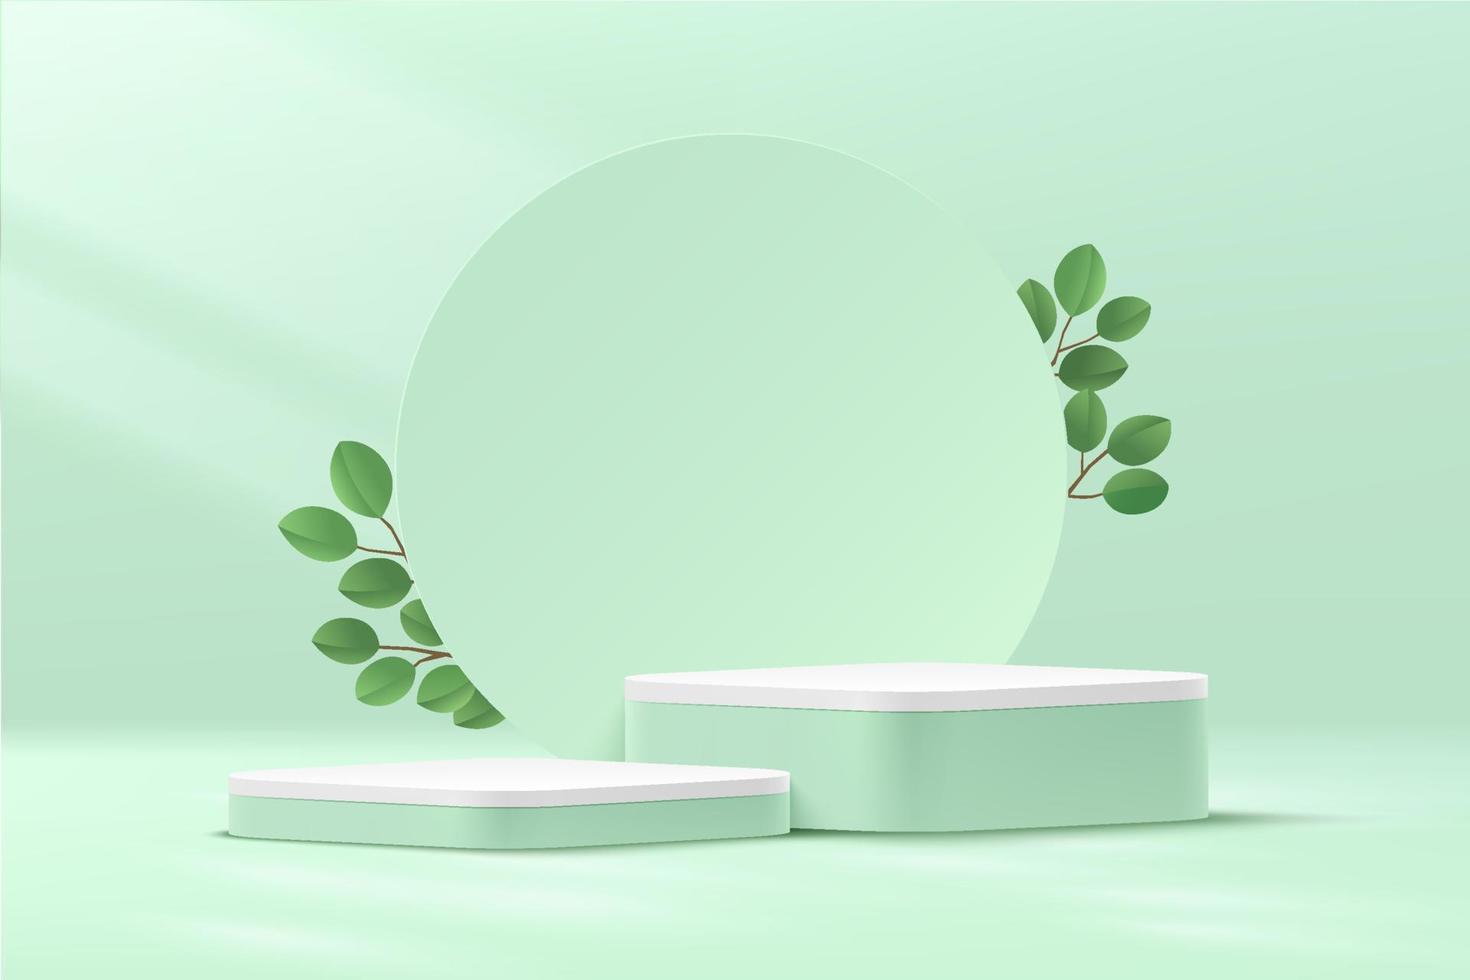 podium de plate-forme de cube de coin rond vert et blanc abstrait. fond de cercle et feuille verte. scène murale minimale vert clair pastel. rendu vectoriel forme 3d pour la présentation d'affichage de produits cosmétiques.